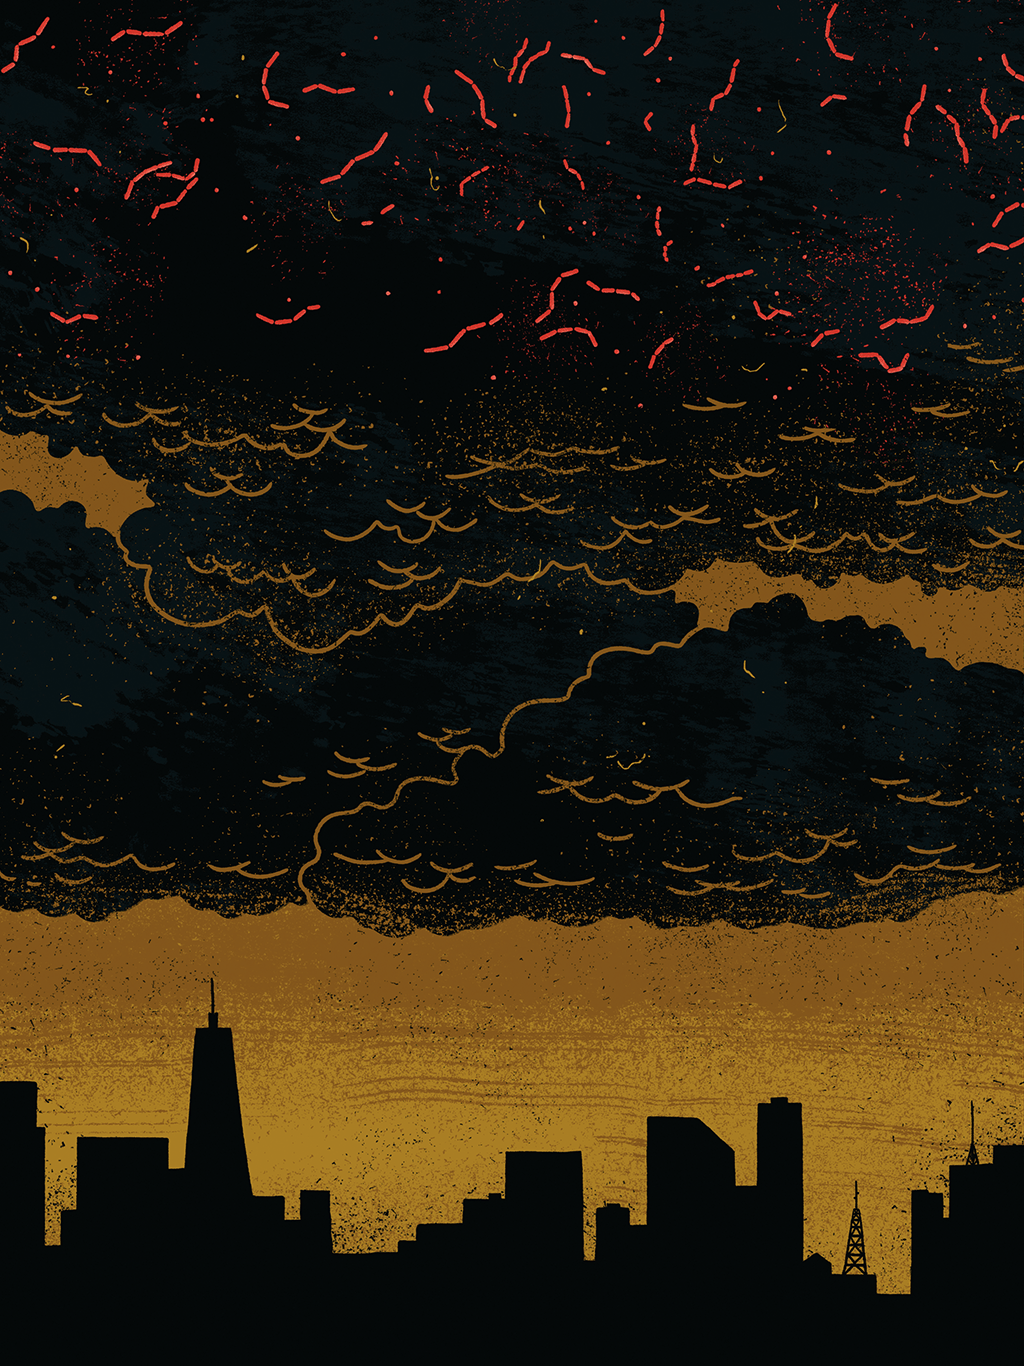 Ilustração de skyline de cidade com nuvens no céu e micróbios acima delas.